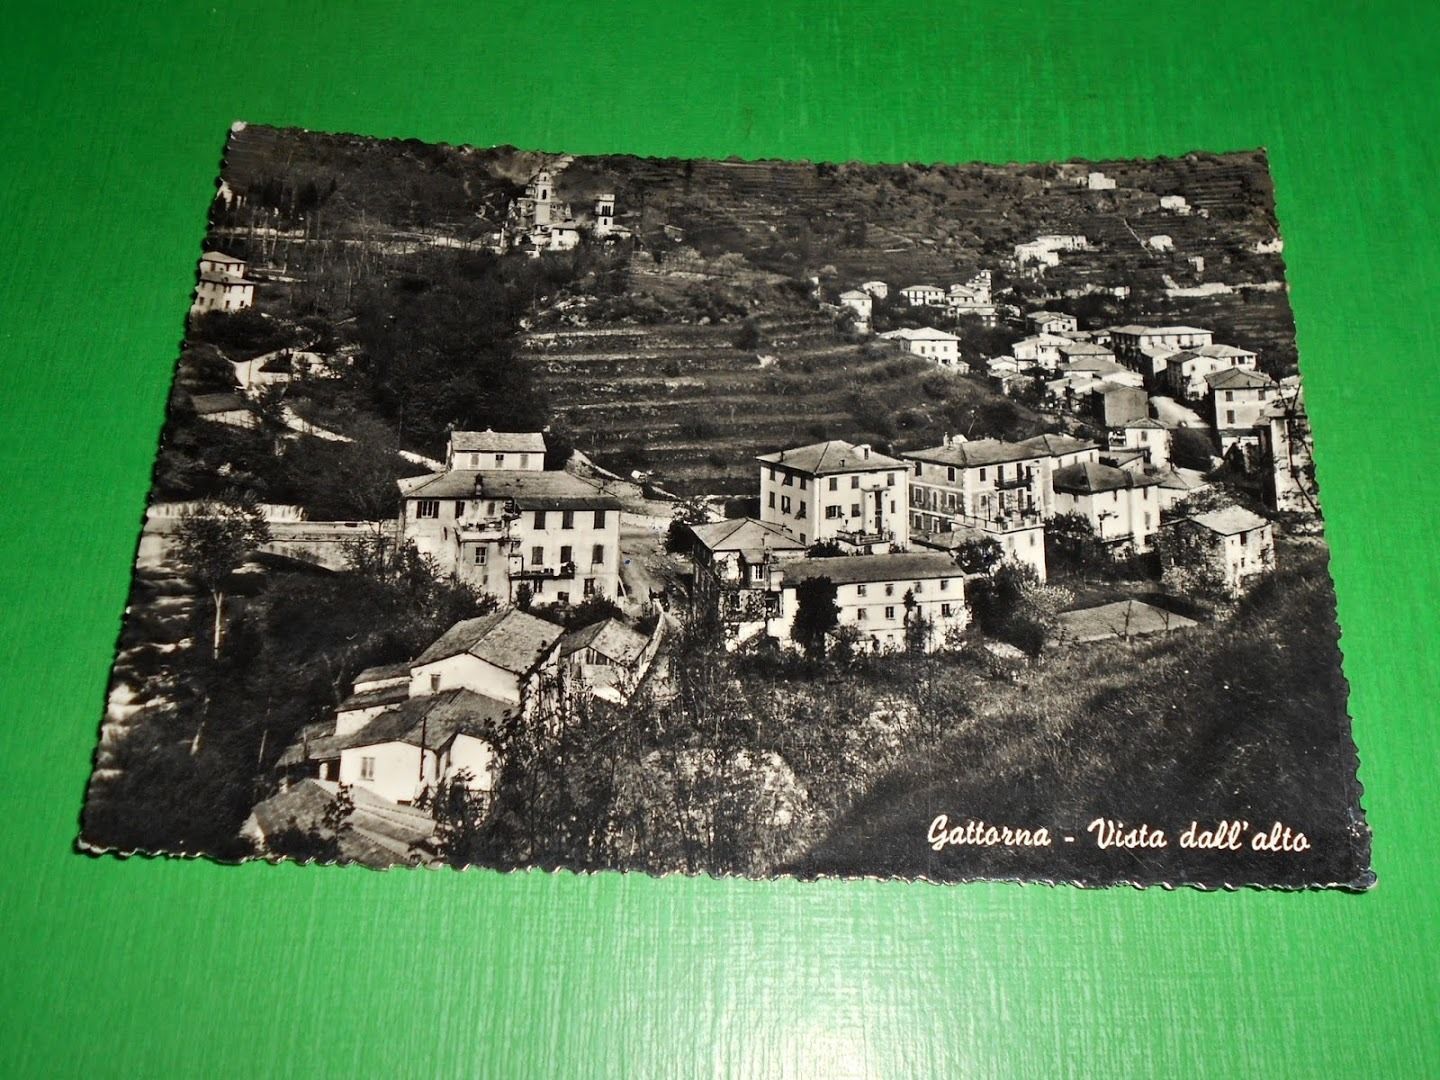 Cartolina Gattorna - Vista dall' alto 1958.